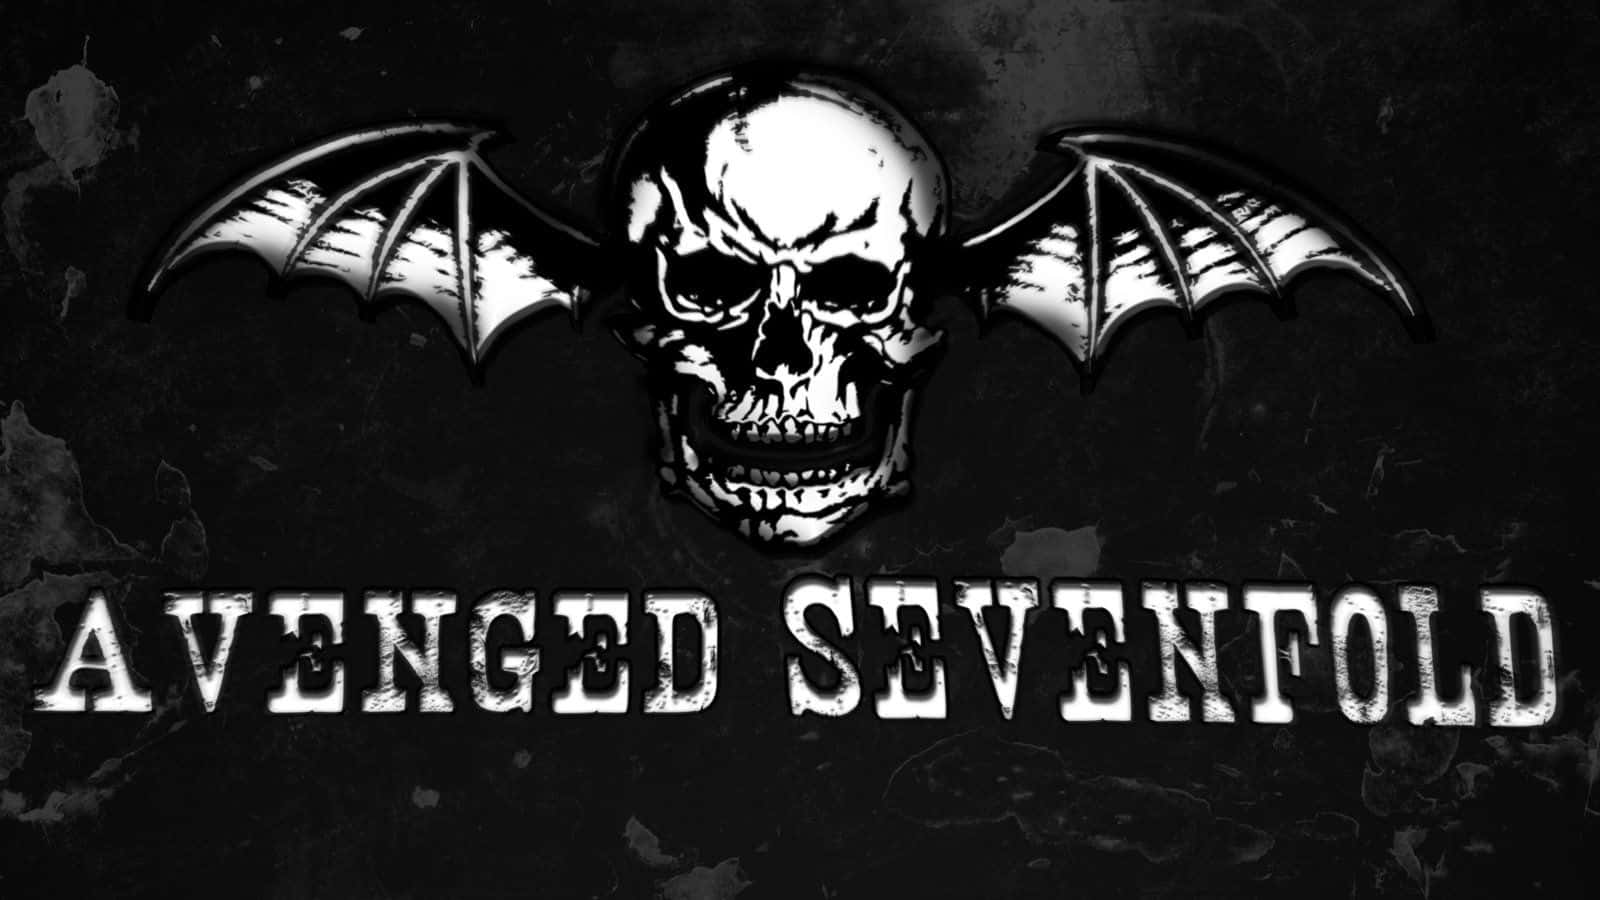 Avengedsevenfold Schädel-logo Wallpaper